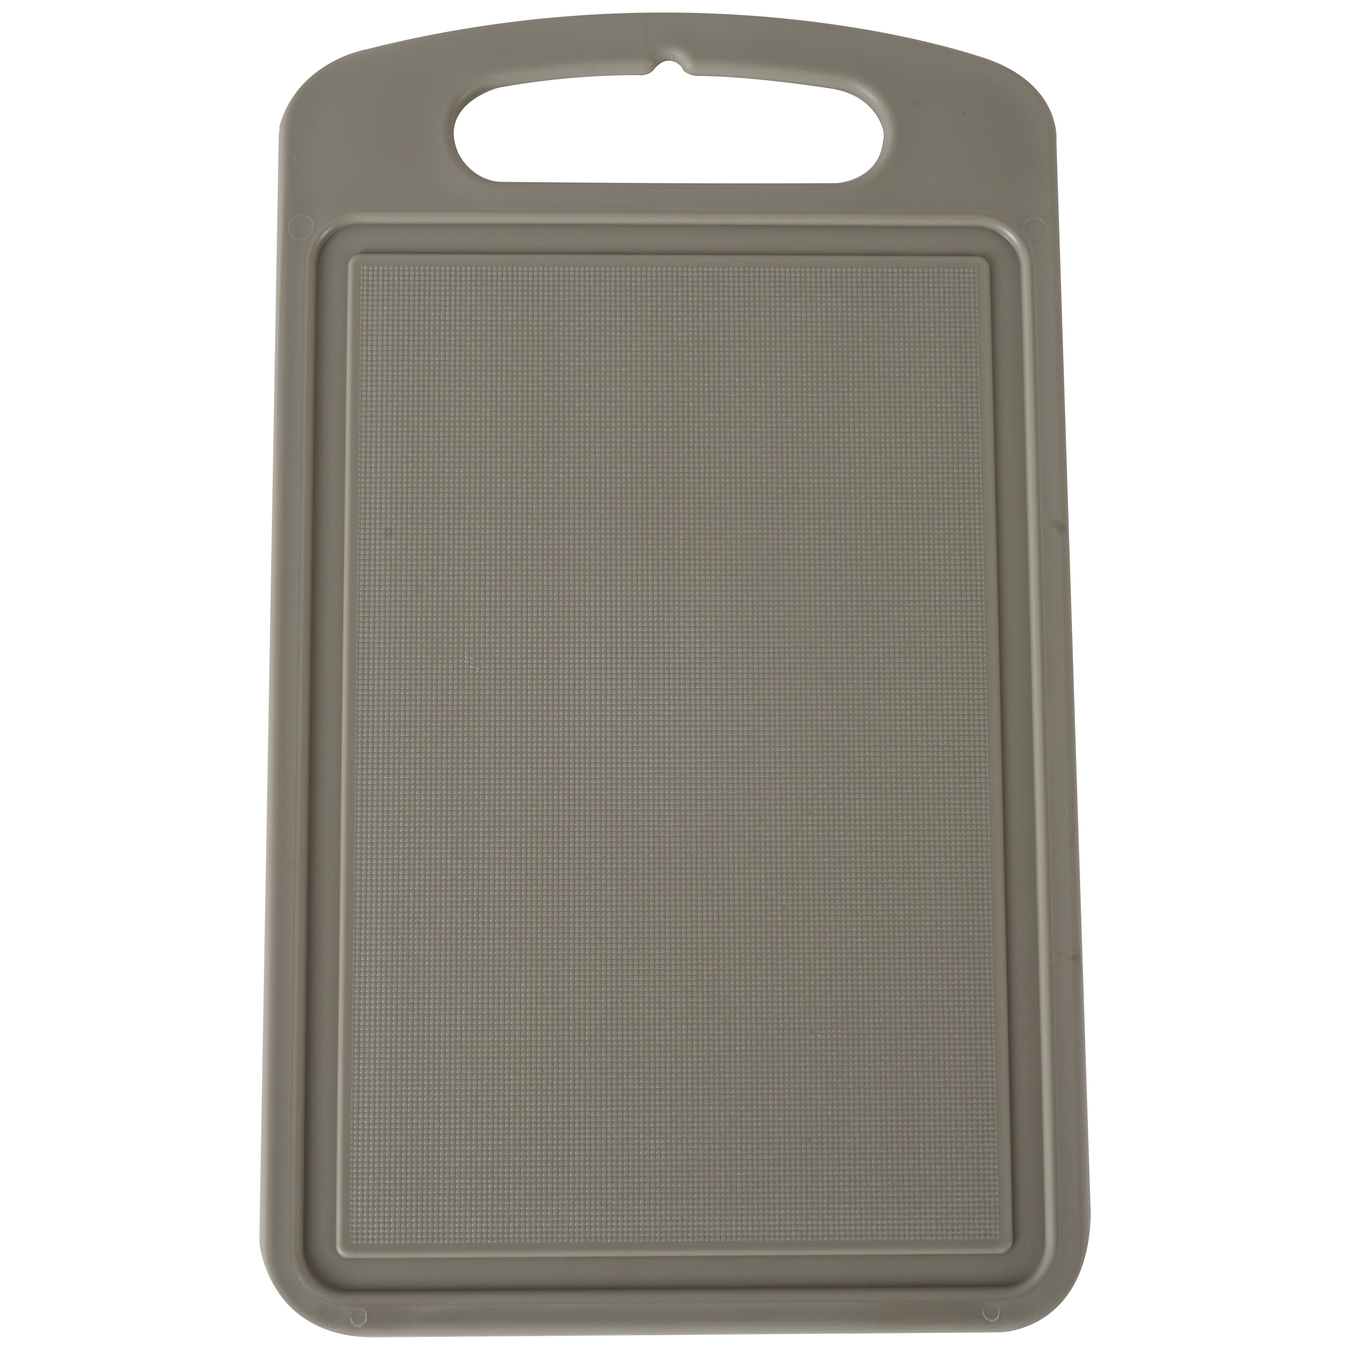 Aleana cutting board gray 35*25 cm 2